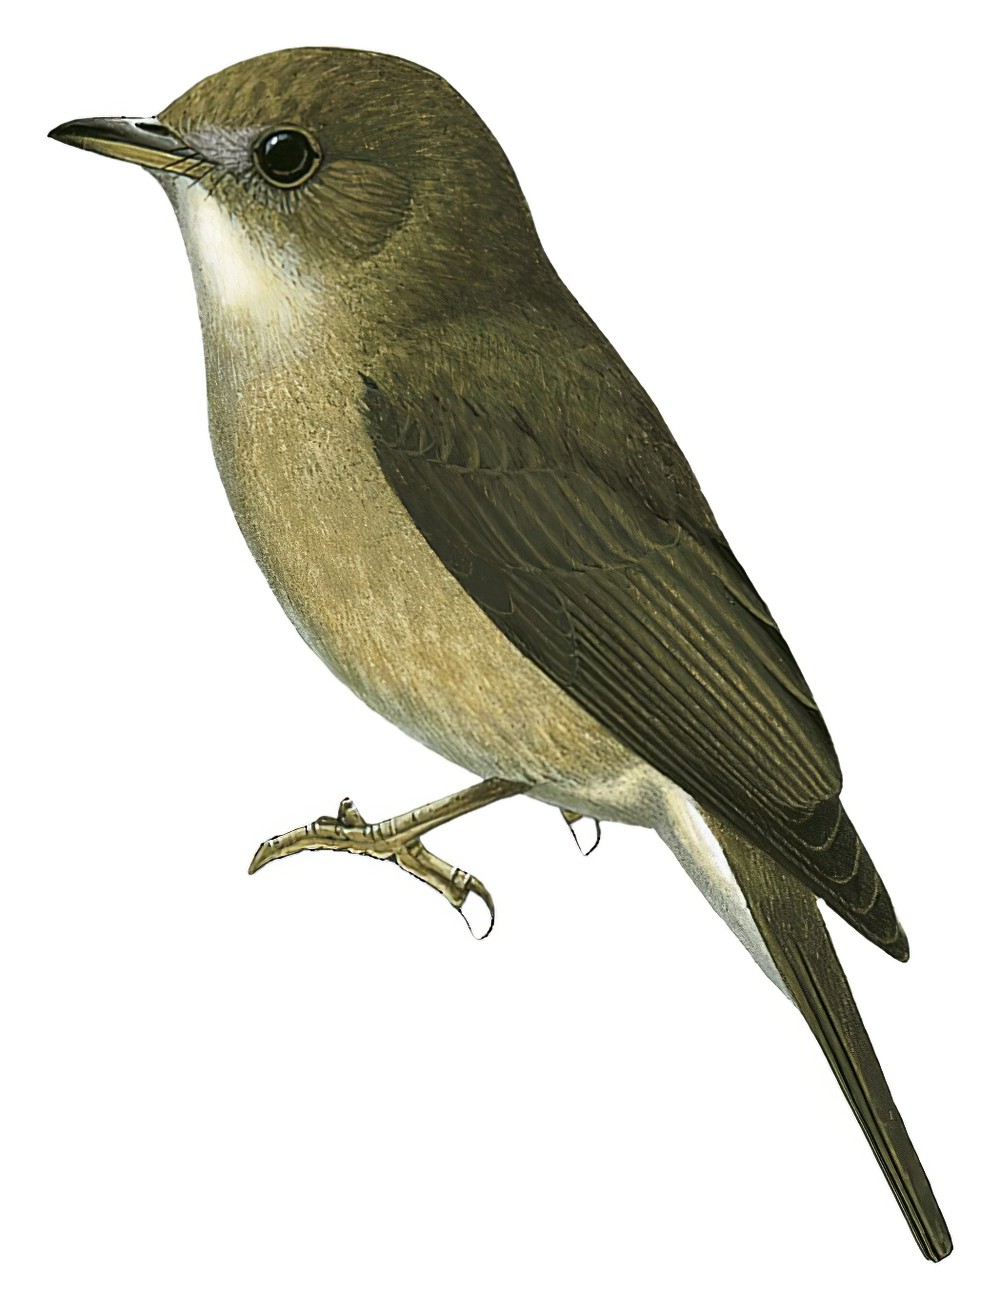 Olivaceous Flycatcher / Fraseria olivascens